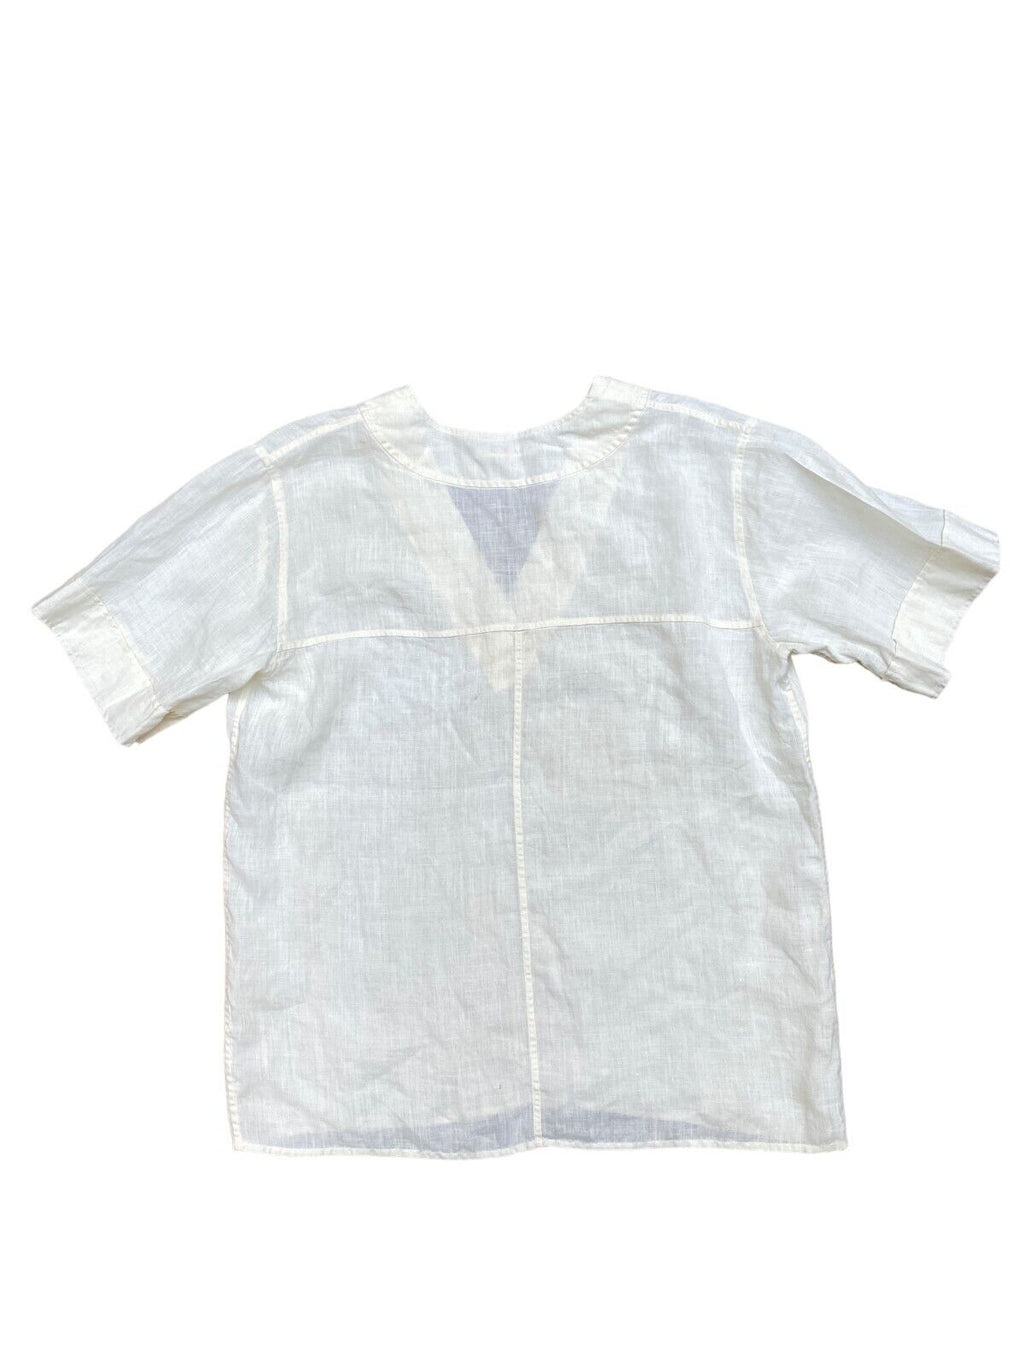 1970s Vintage Linen T-shirt Ivory Color  Size M